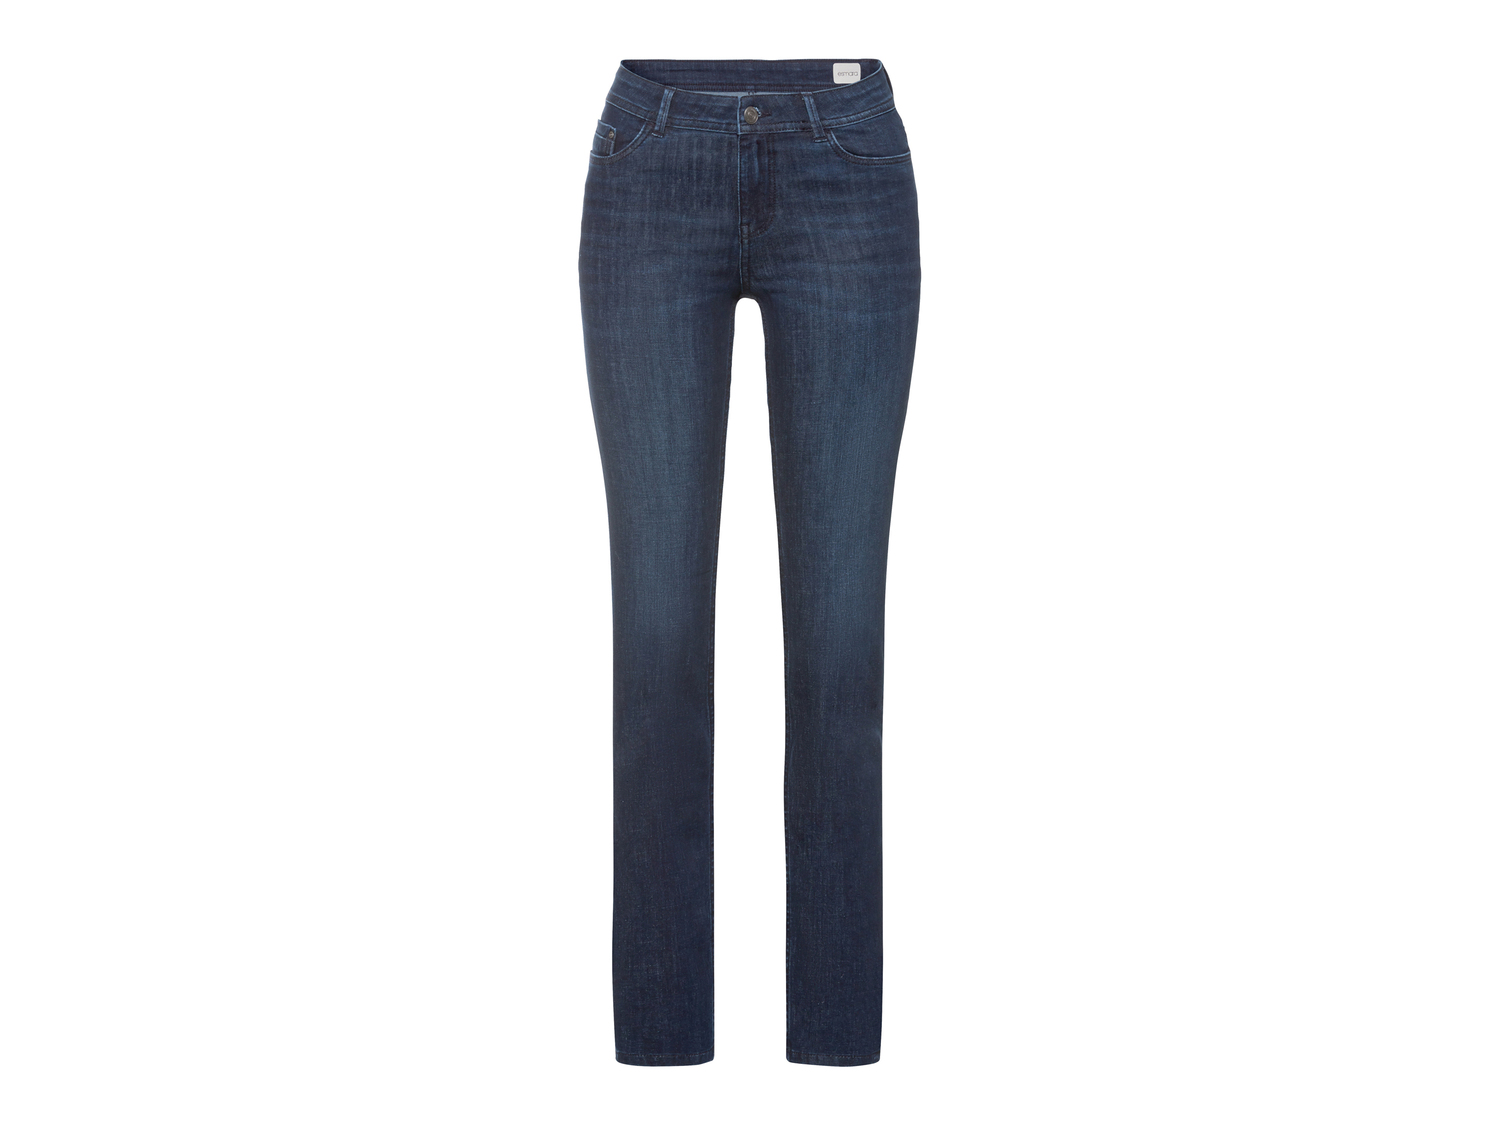 Jeans slim fit da donna Esmara, prezzo 12.99 &#8364; 
Misure: 38-48
Taglie disponibili

Caratteristiche

- ...